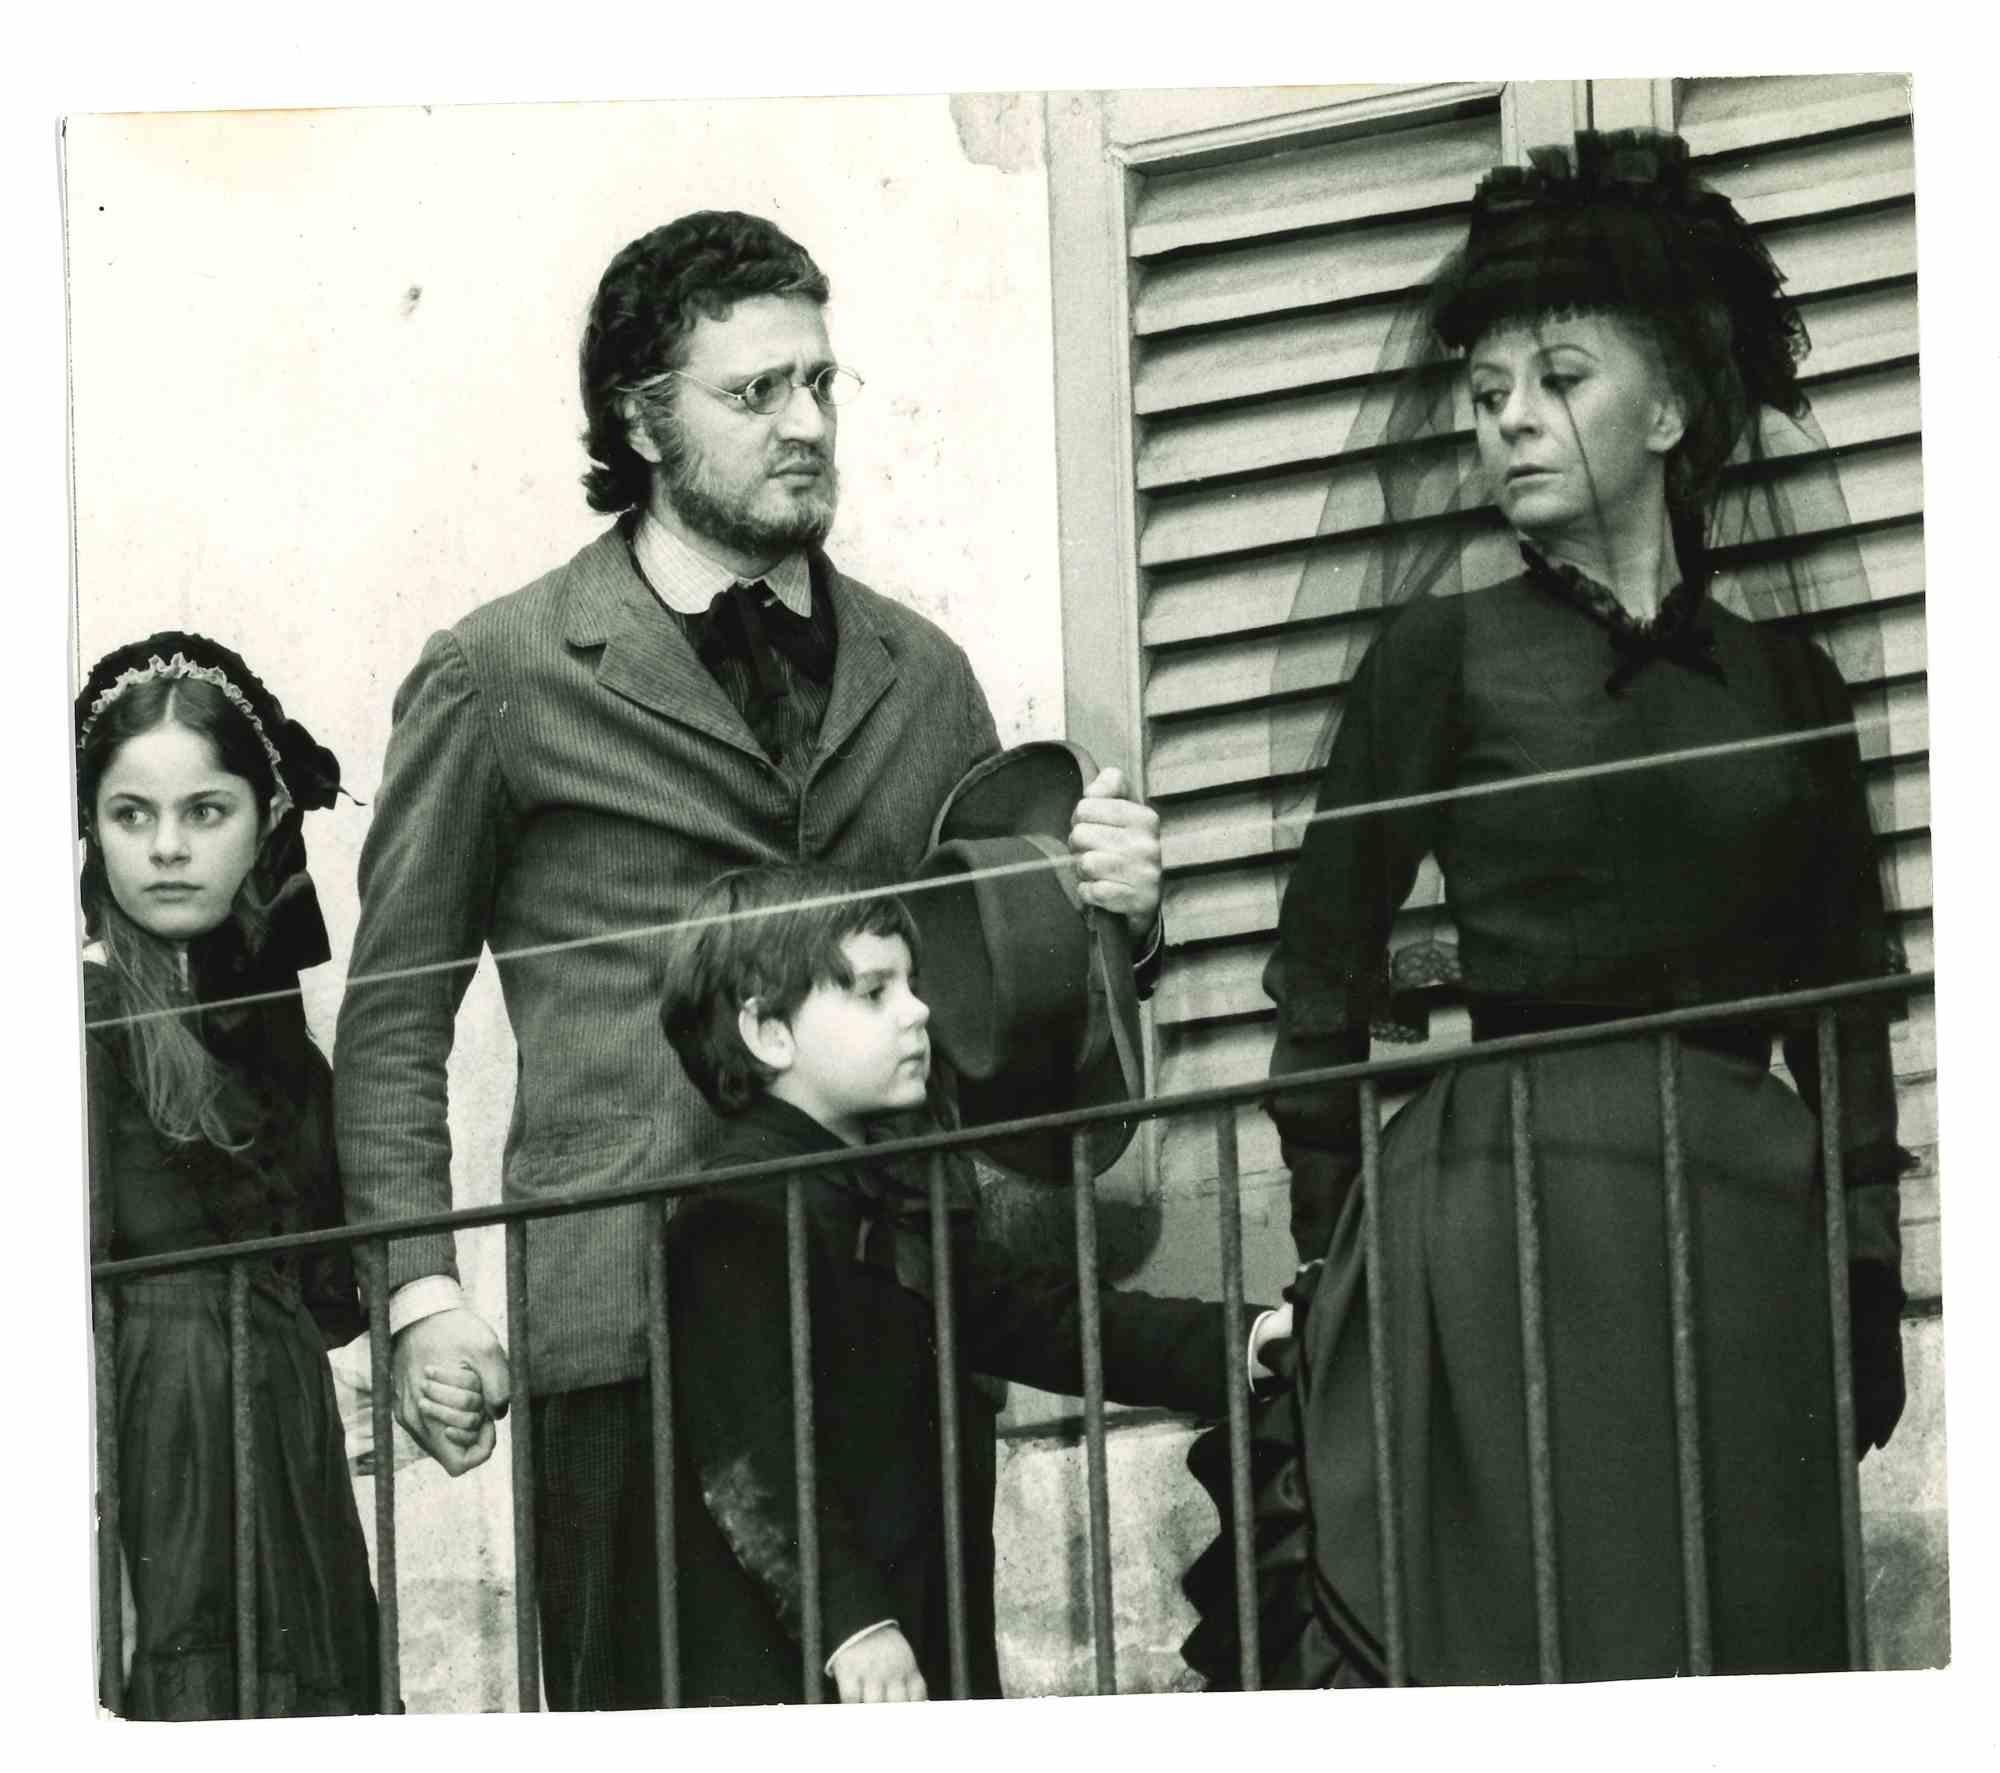 Unknown Figurative Photograph - Giulietta Masina - Golden Age of Italian Cinema - 1960s